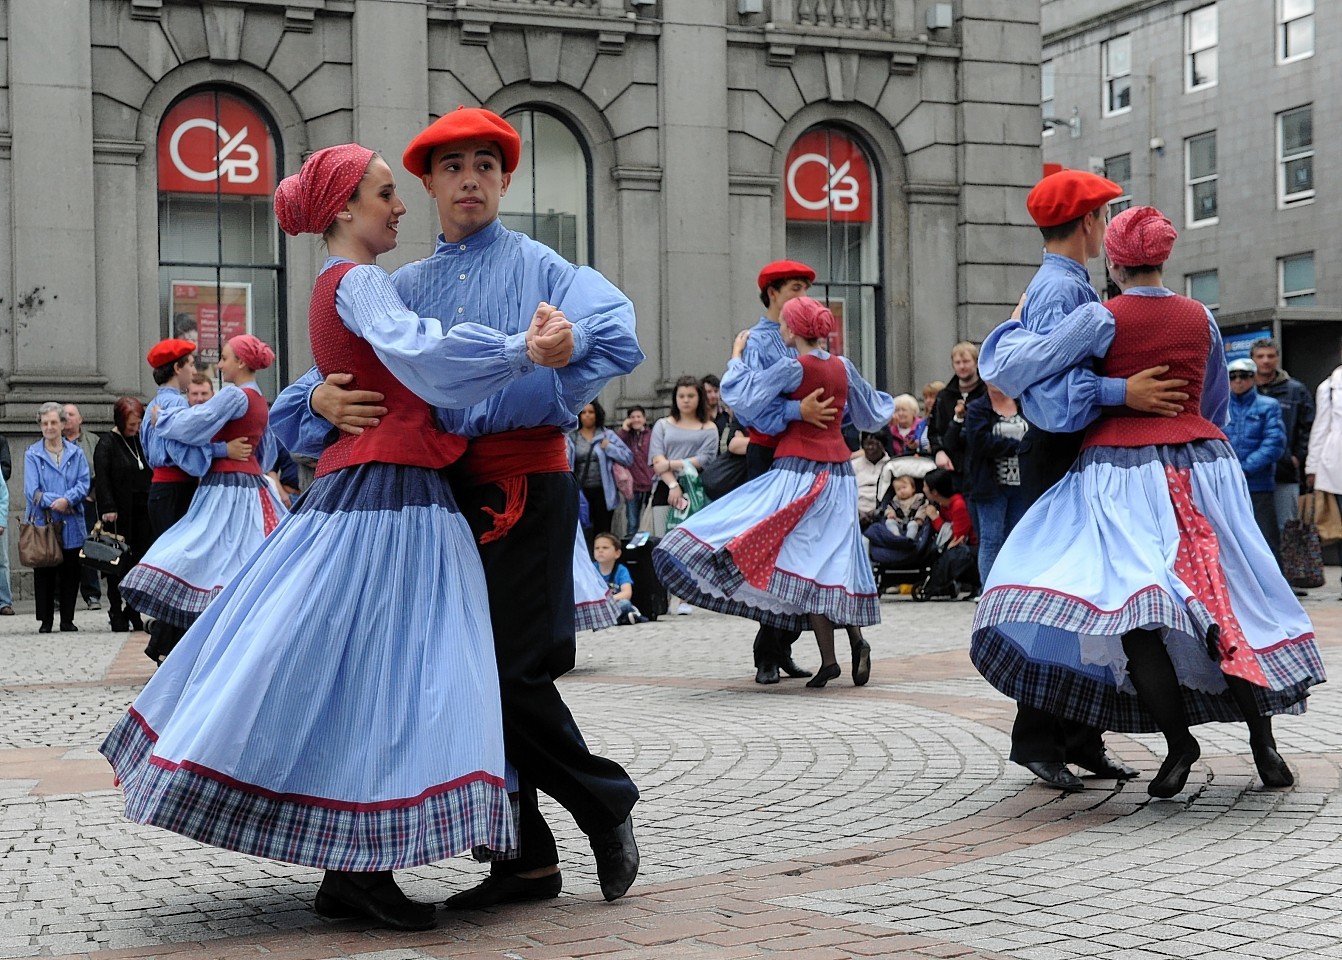 Aberdeen International Youth Festival. 'Kresala Basque Dance' perform.